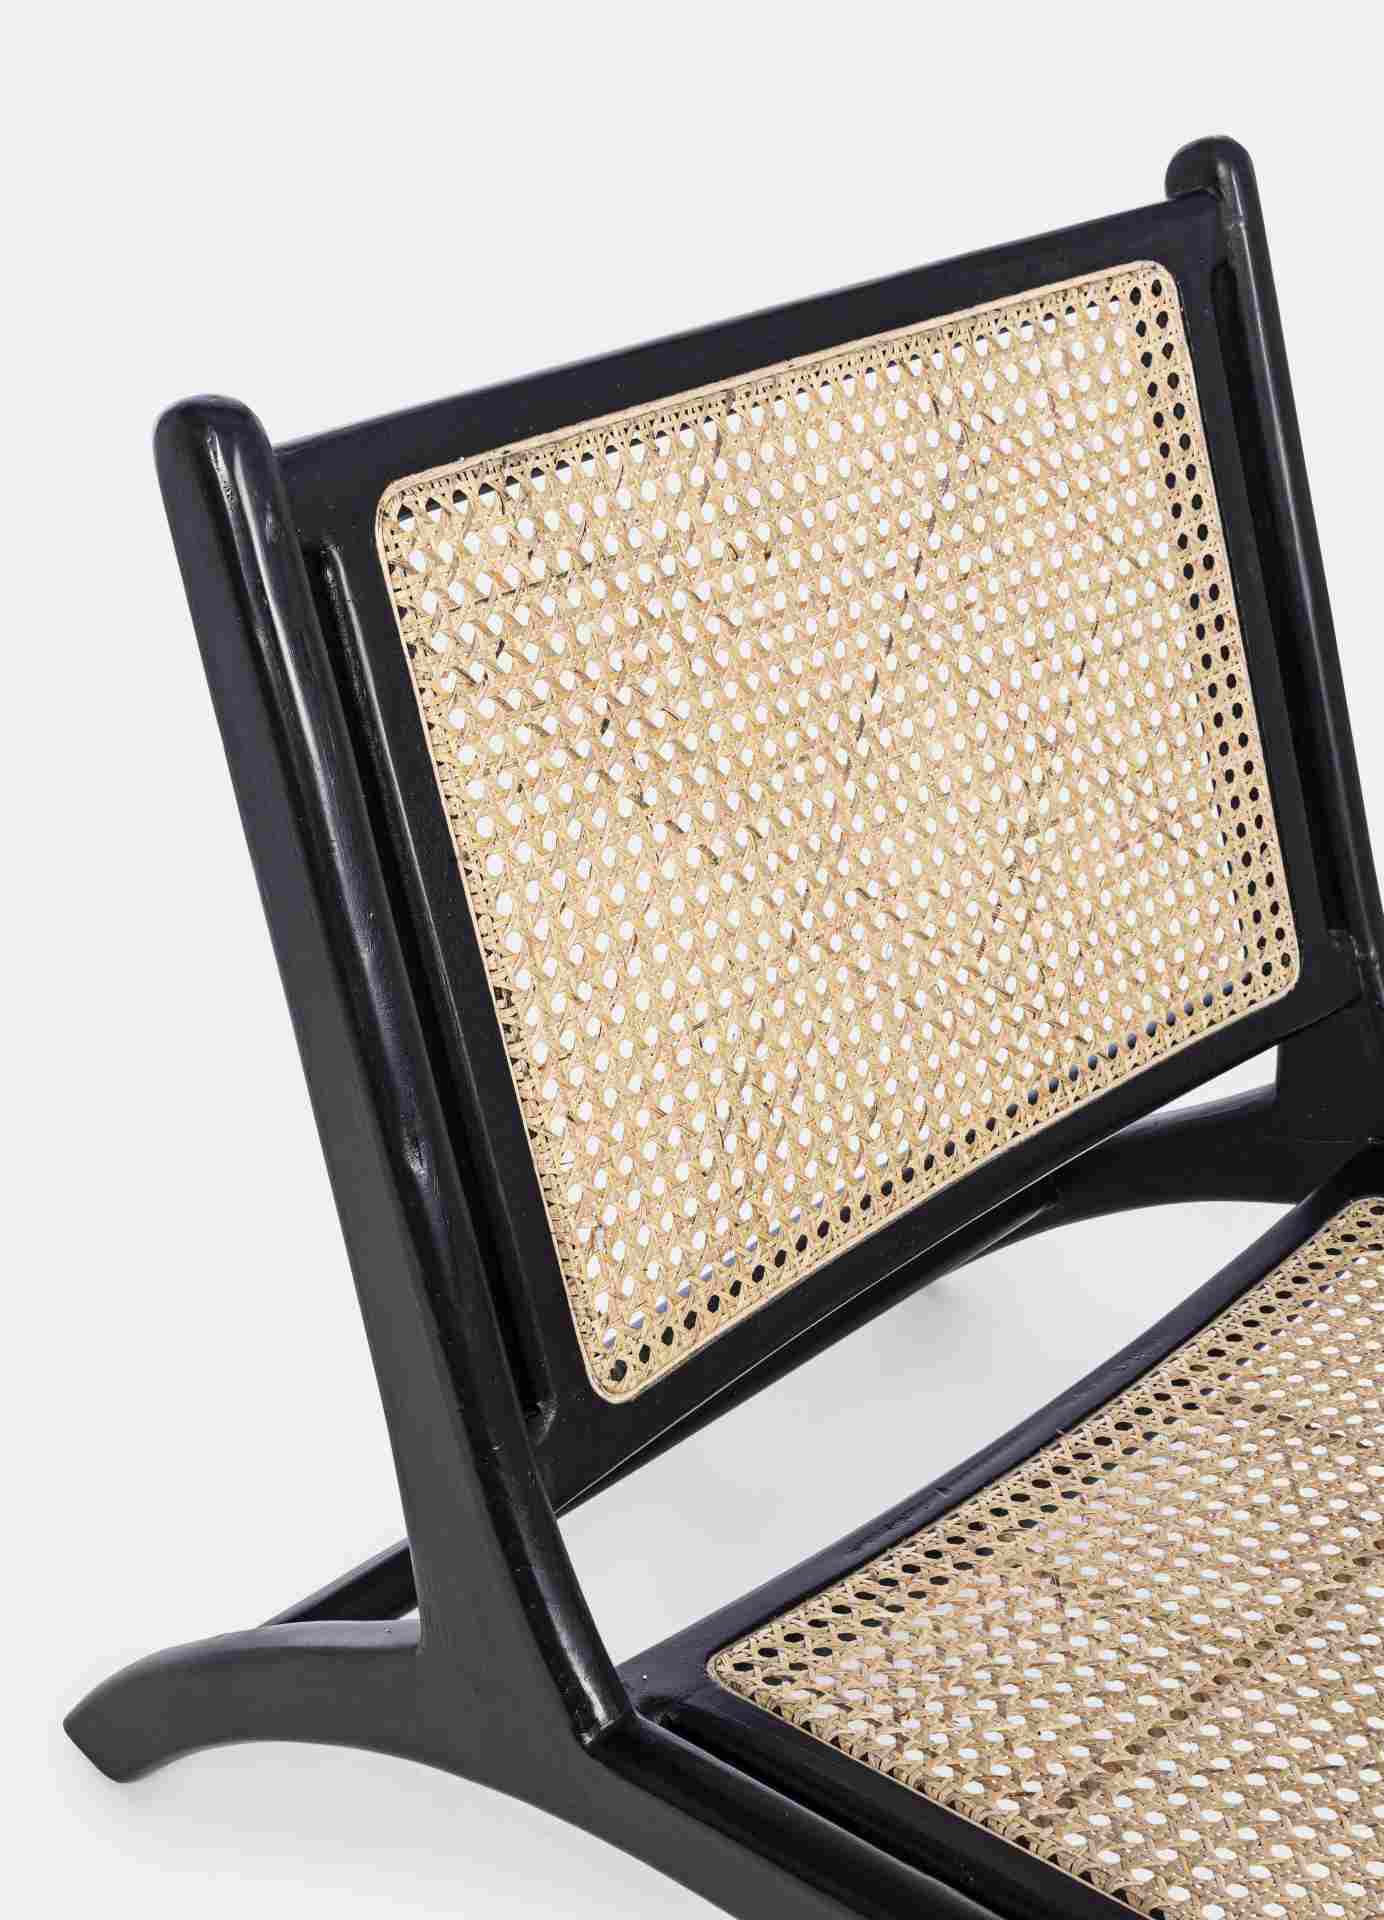 Der Sessel Mabel überzeugt mit seinem klassischen Design. Gefertigt wurde er aus Rattan, welcher einen natürlichen Farbton besitzt. Das Gestell ist aus Kautschukholz und hat eine schwarze Farbe. Der Sessel besitzt eine Sitzhöhe von 41 cm. Die Breite beträ